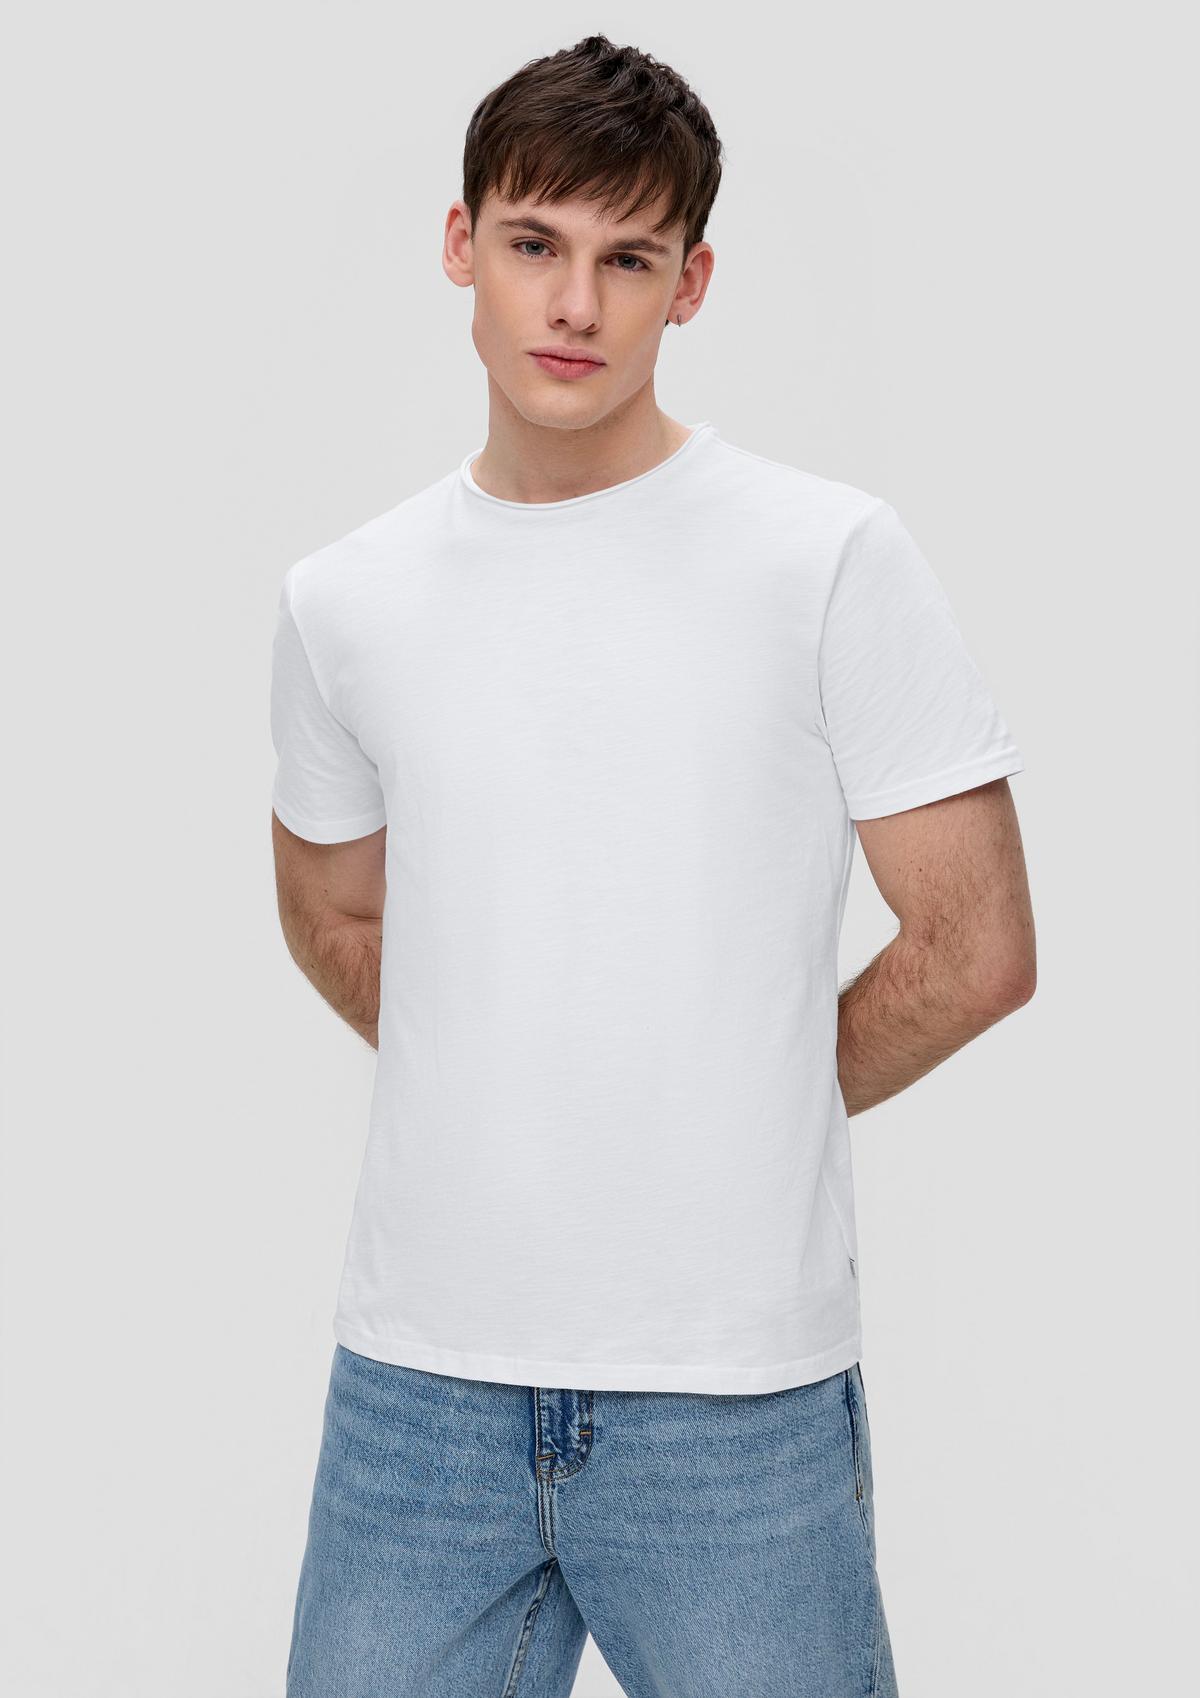 Bavlnené tričko so štruktúrou súkanej priadze